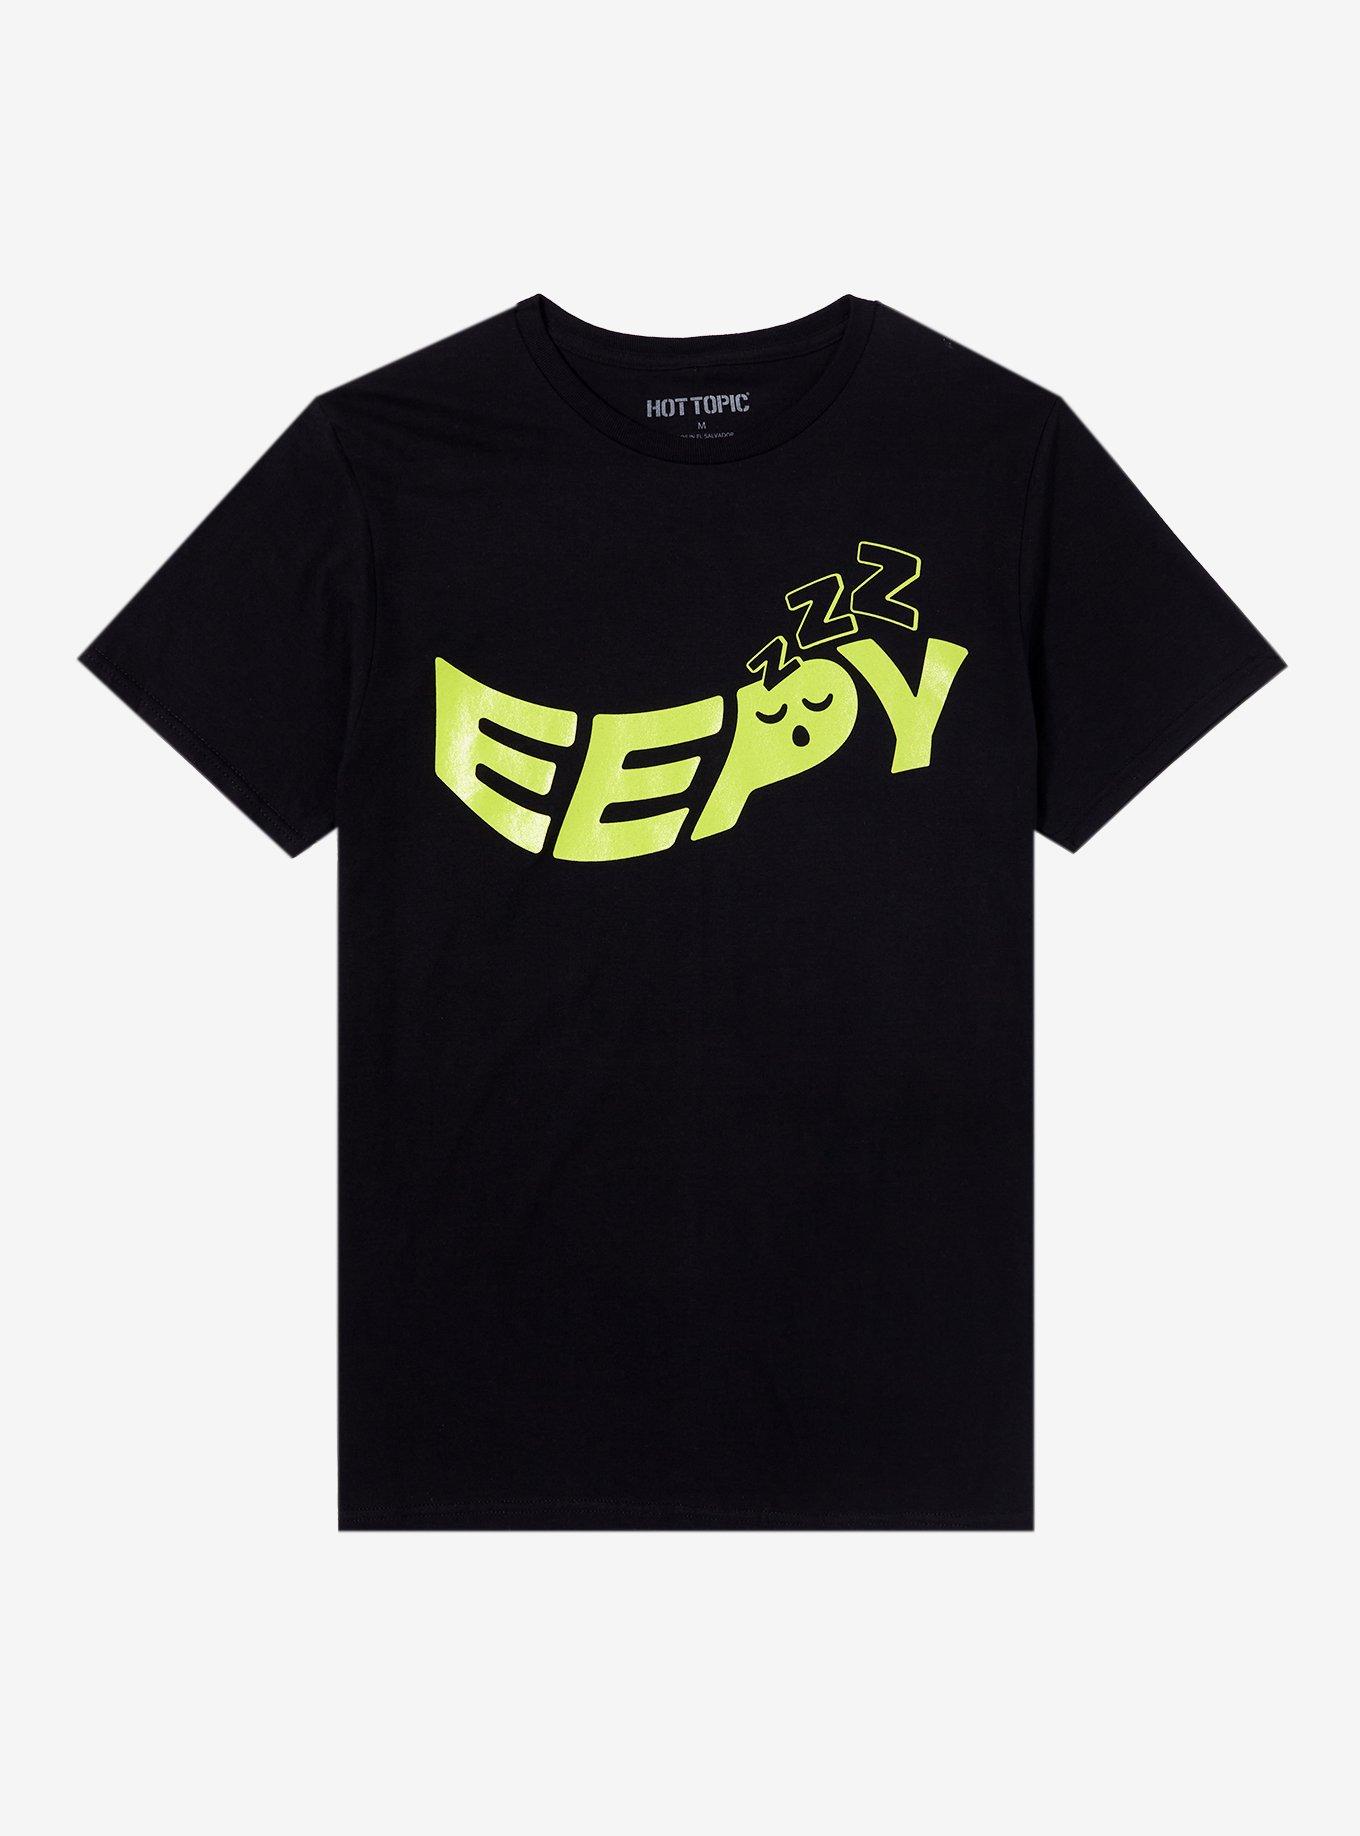 Eepy Glow-In-The-Dark T-Shirt